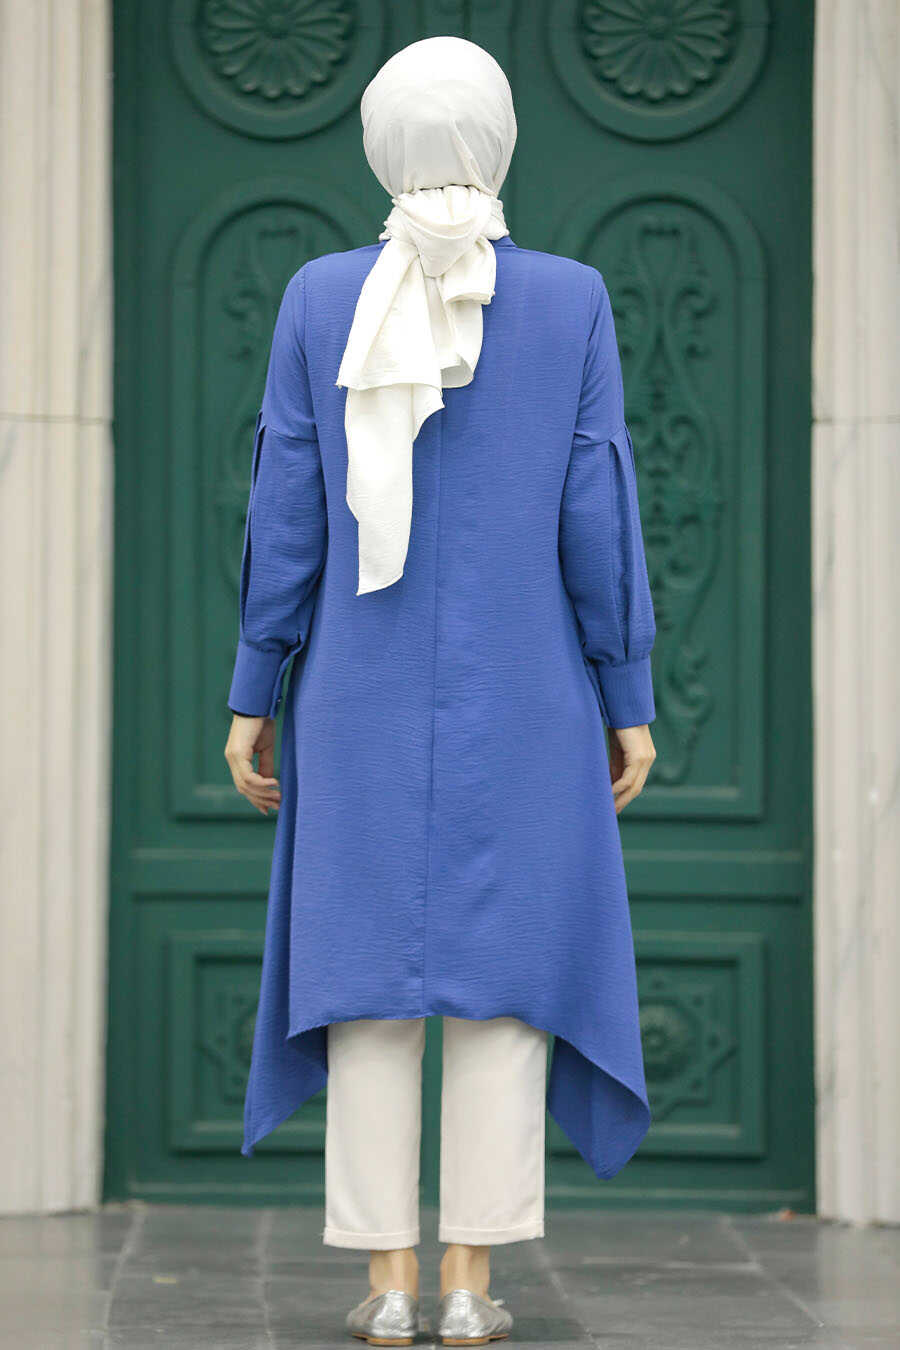 Neva Style - İndigo Blue Islamic Clothing Tunic 615IM